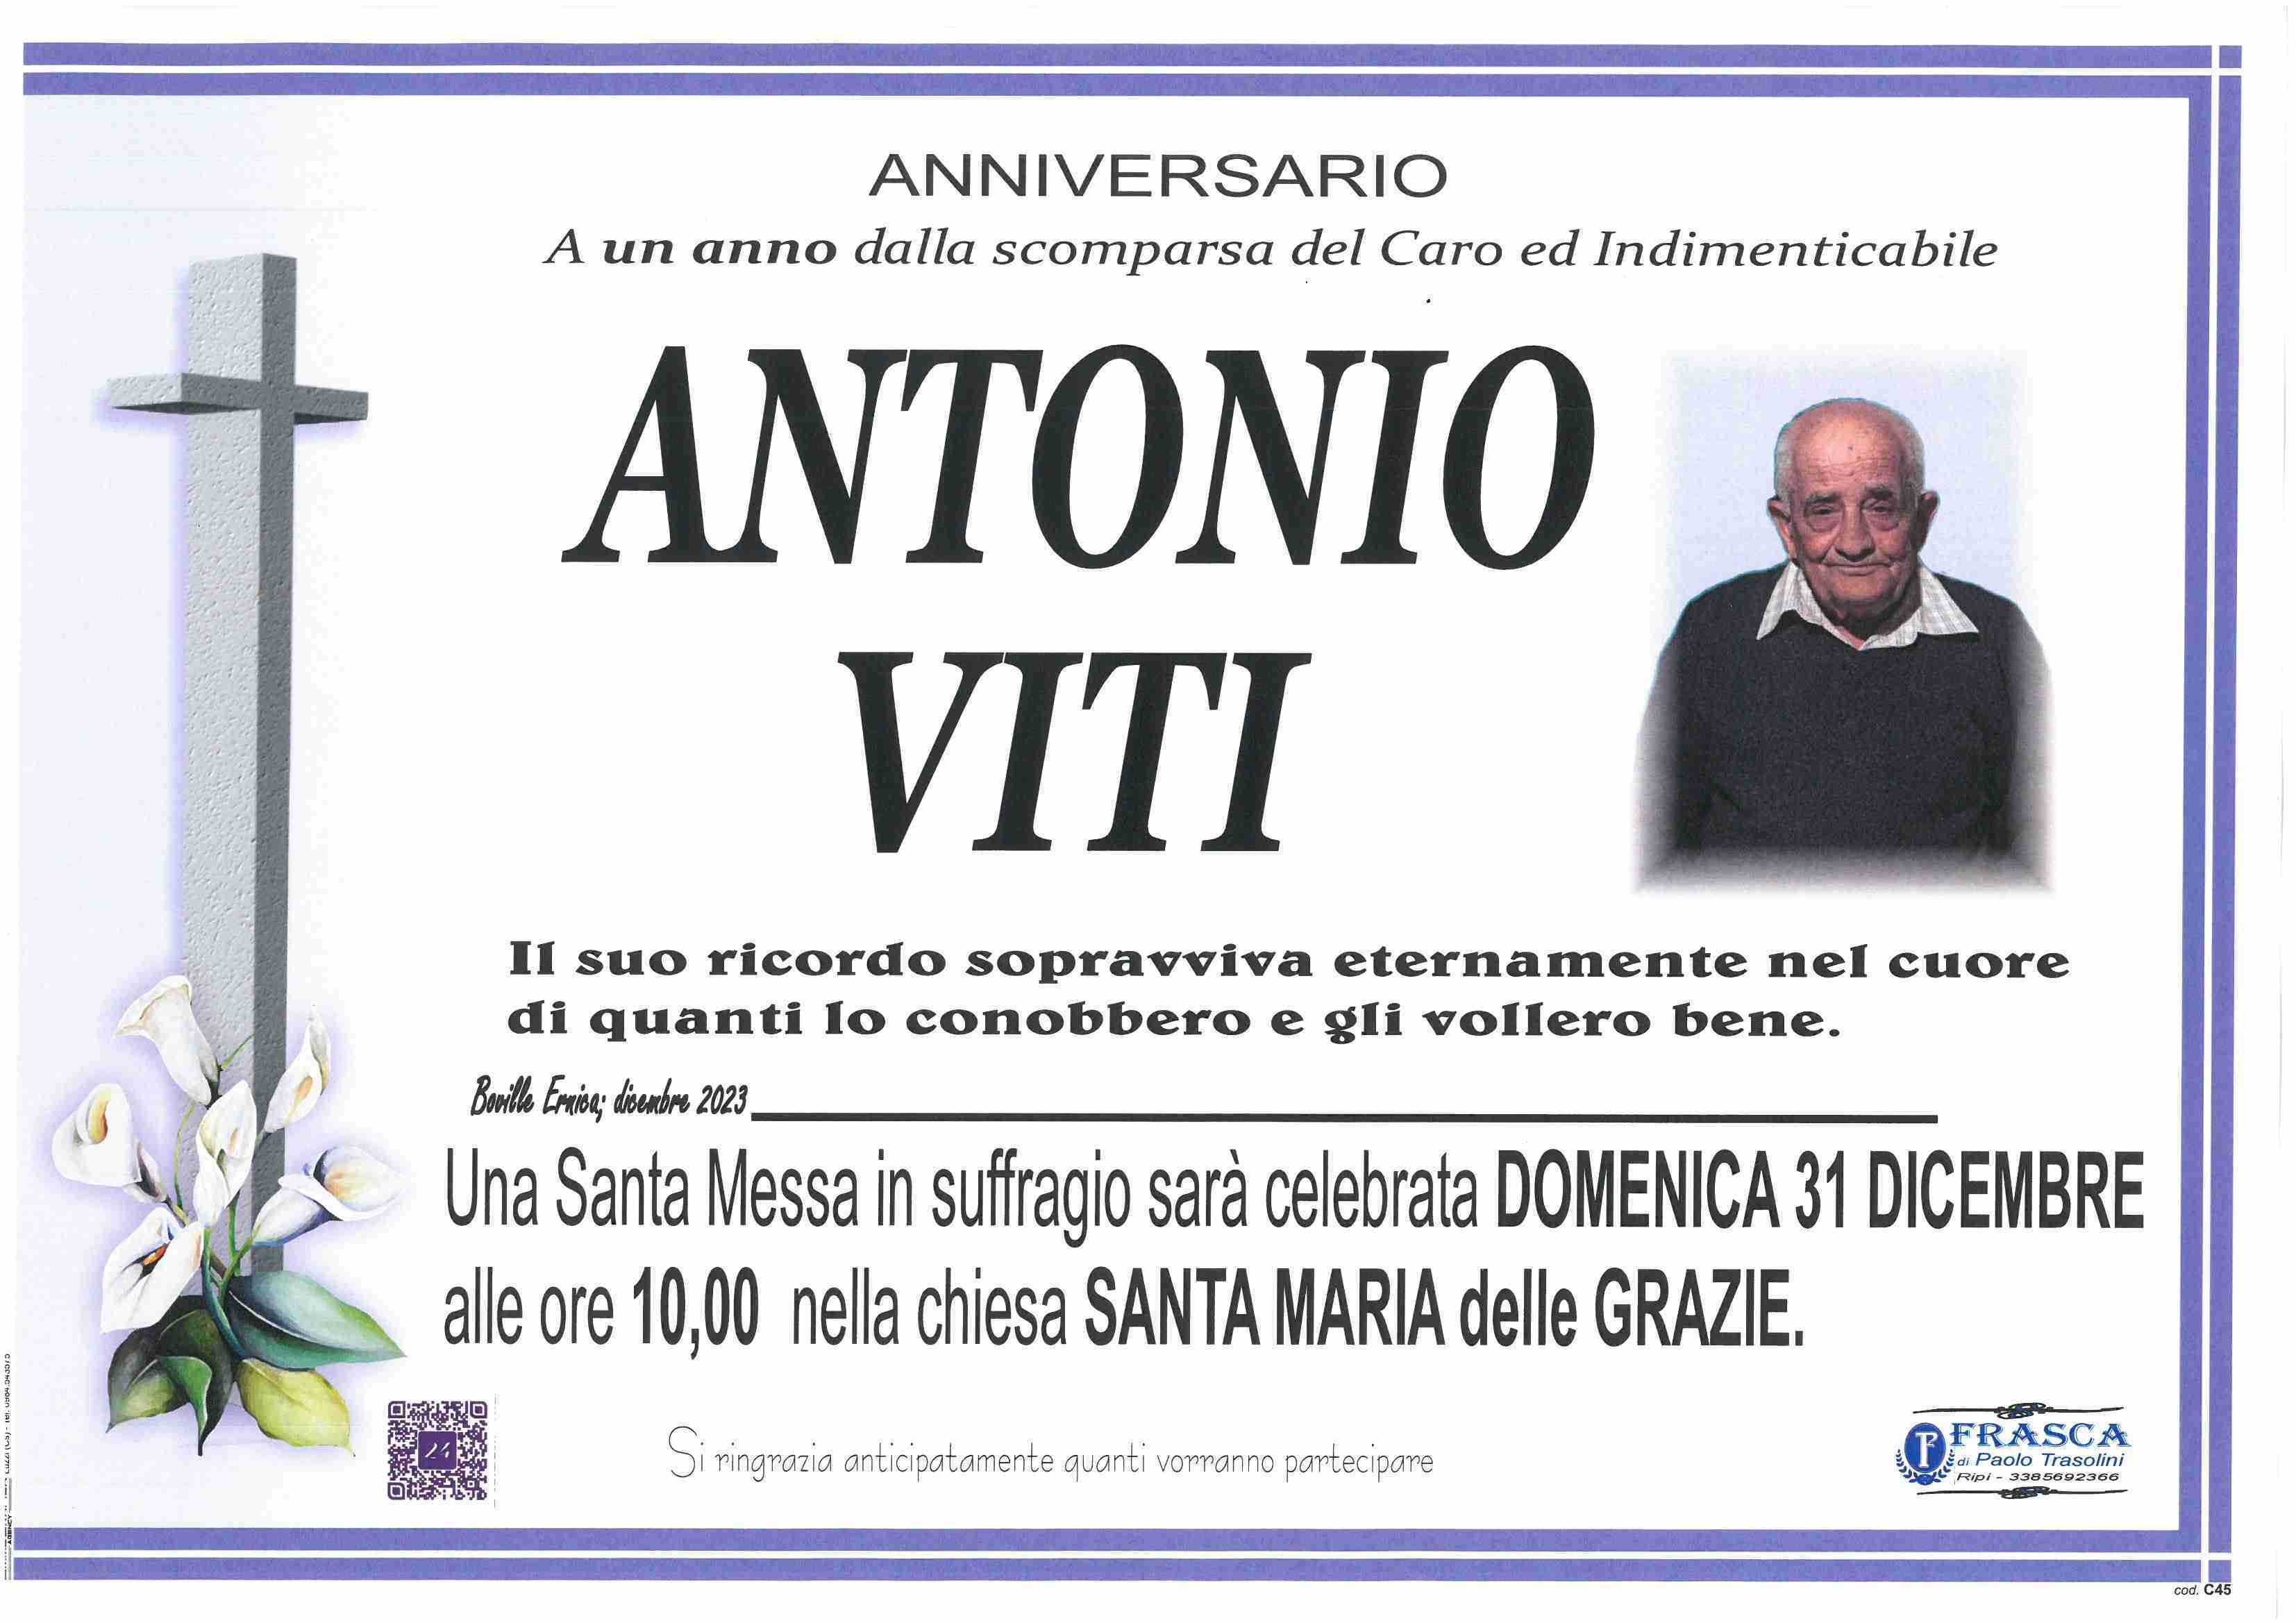 Antonio Viti